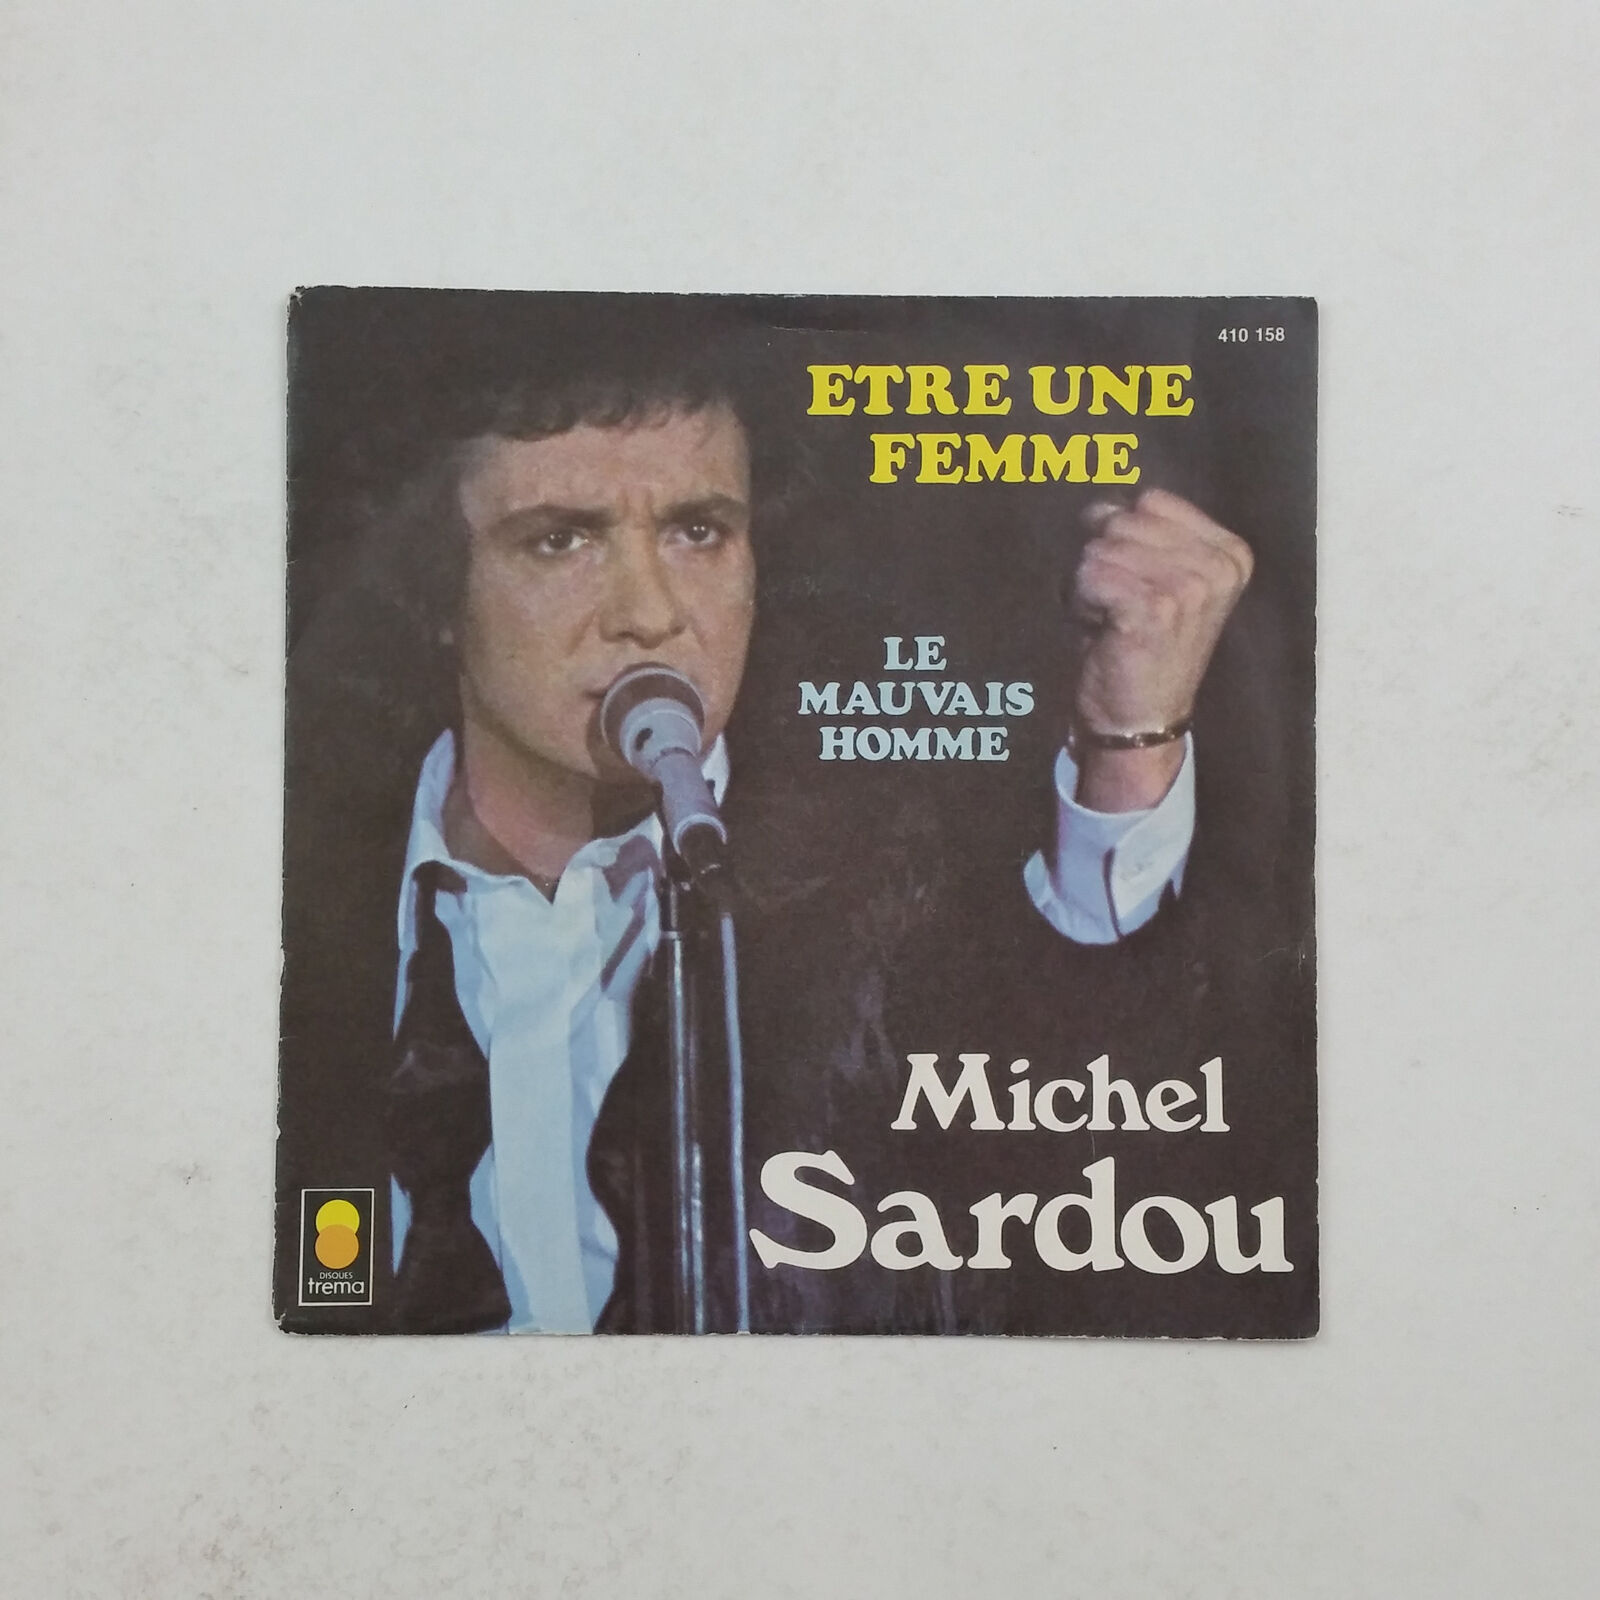 MICHEL SARDOU Etre Une Femme 410.158 France 7" 45rpm Vinyl VG+ Cover VG+ PS